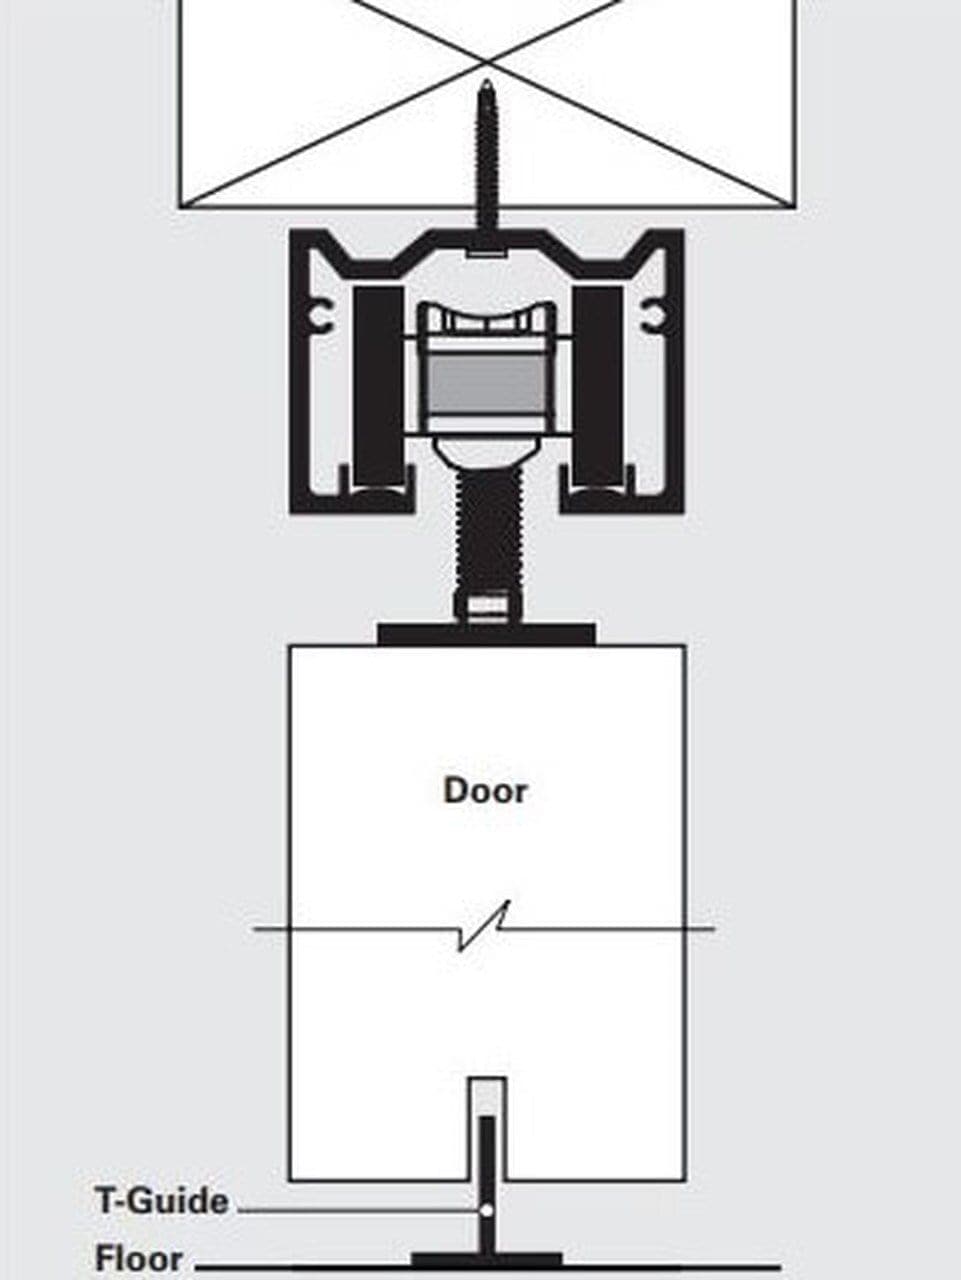 Heavy Duty Interior &amp; Exterior Sliding Door Hardware Kit - Sliding Barn Door Hardware by RealCraft